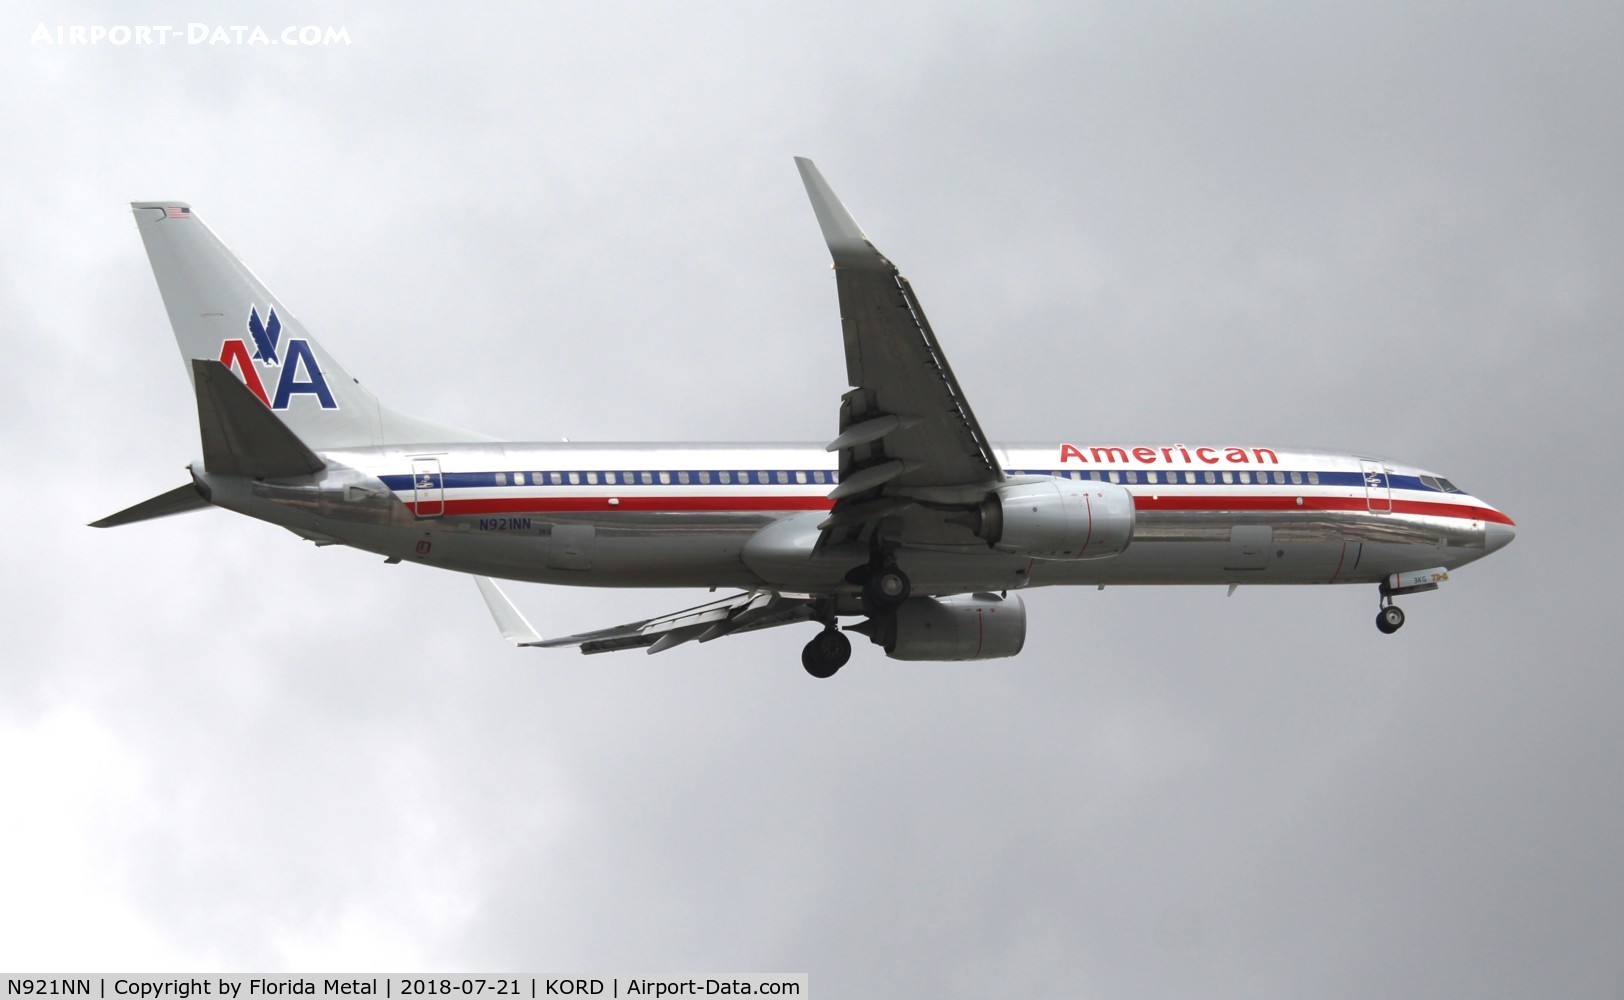 N921NN, 2013 Boeing 737-823 C/N 33229, ORD spotting